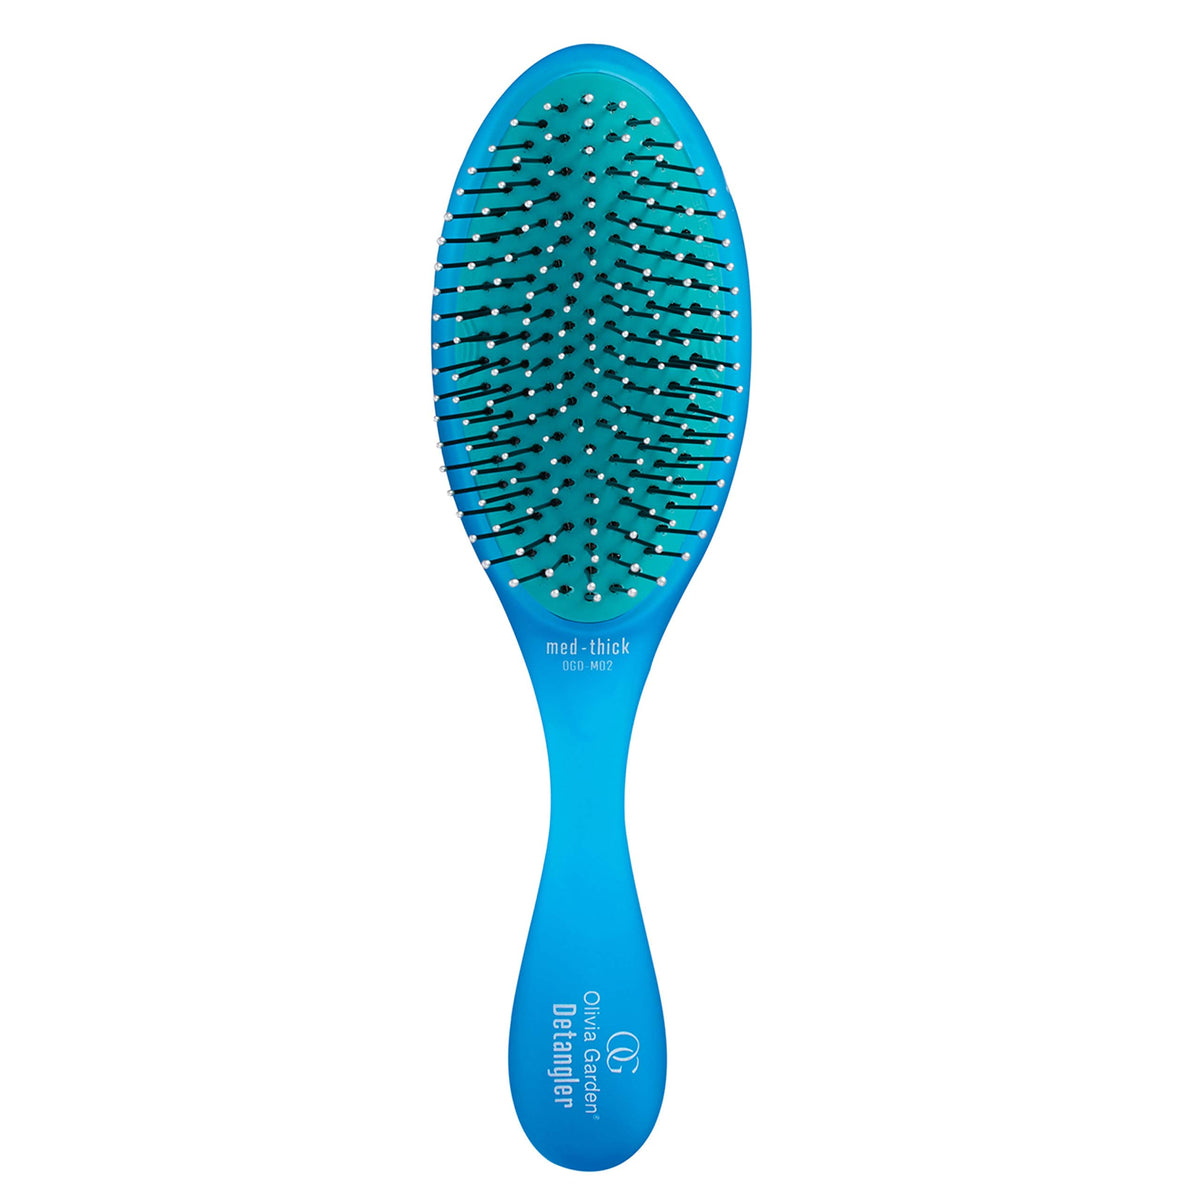 Olivia Garden Detangler Brush For Fine Medium and Thick Hair - Medium-Thick / Blue - by Olivia Garden |ProCare Outlet|